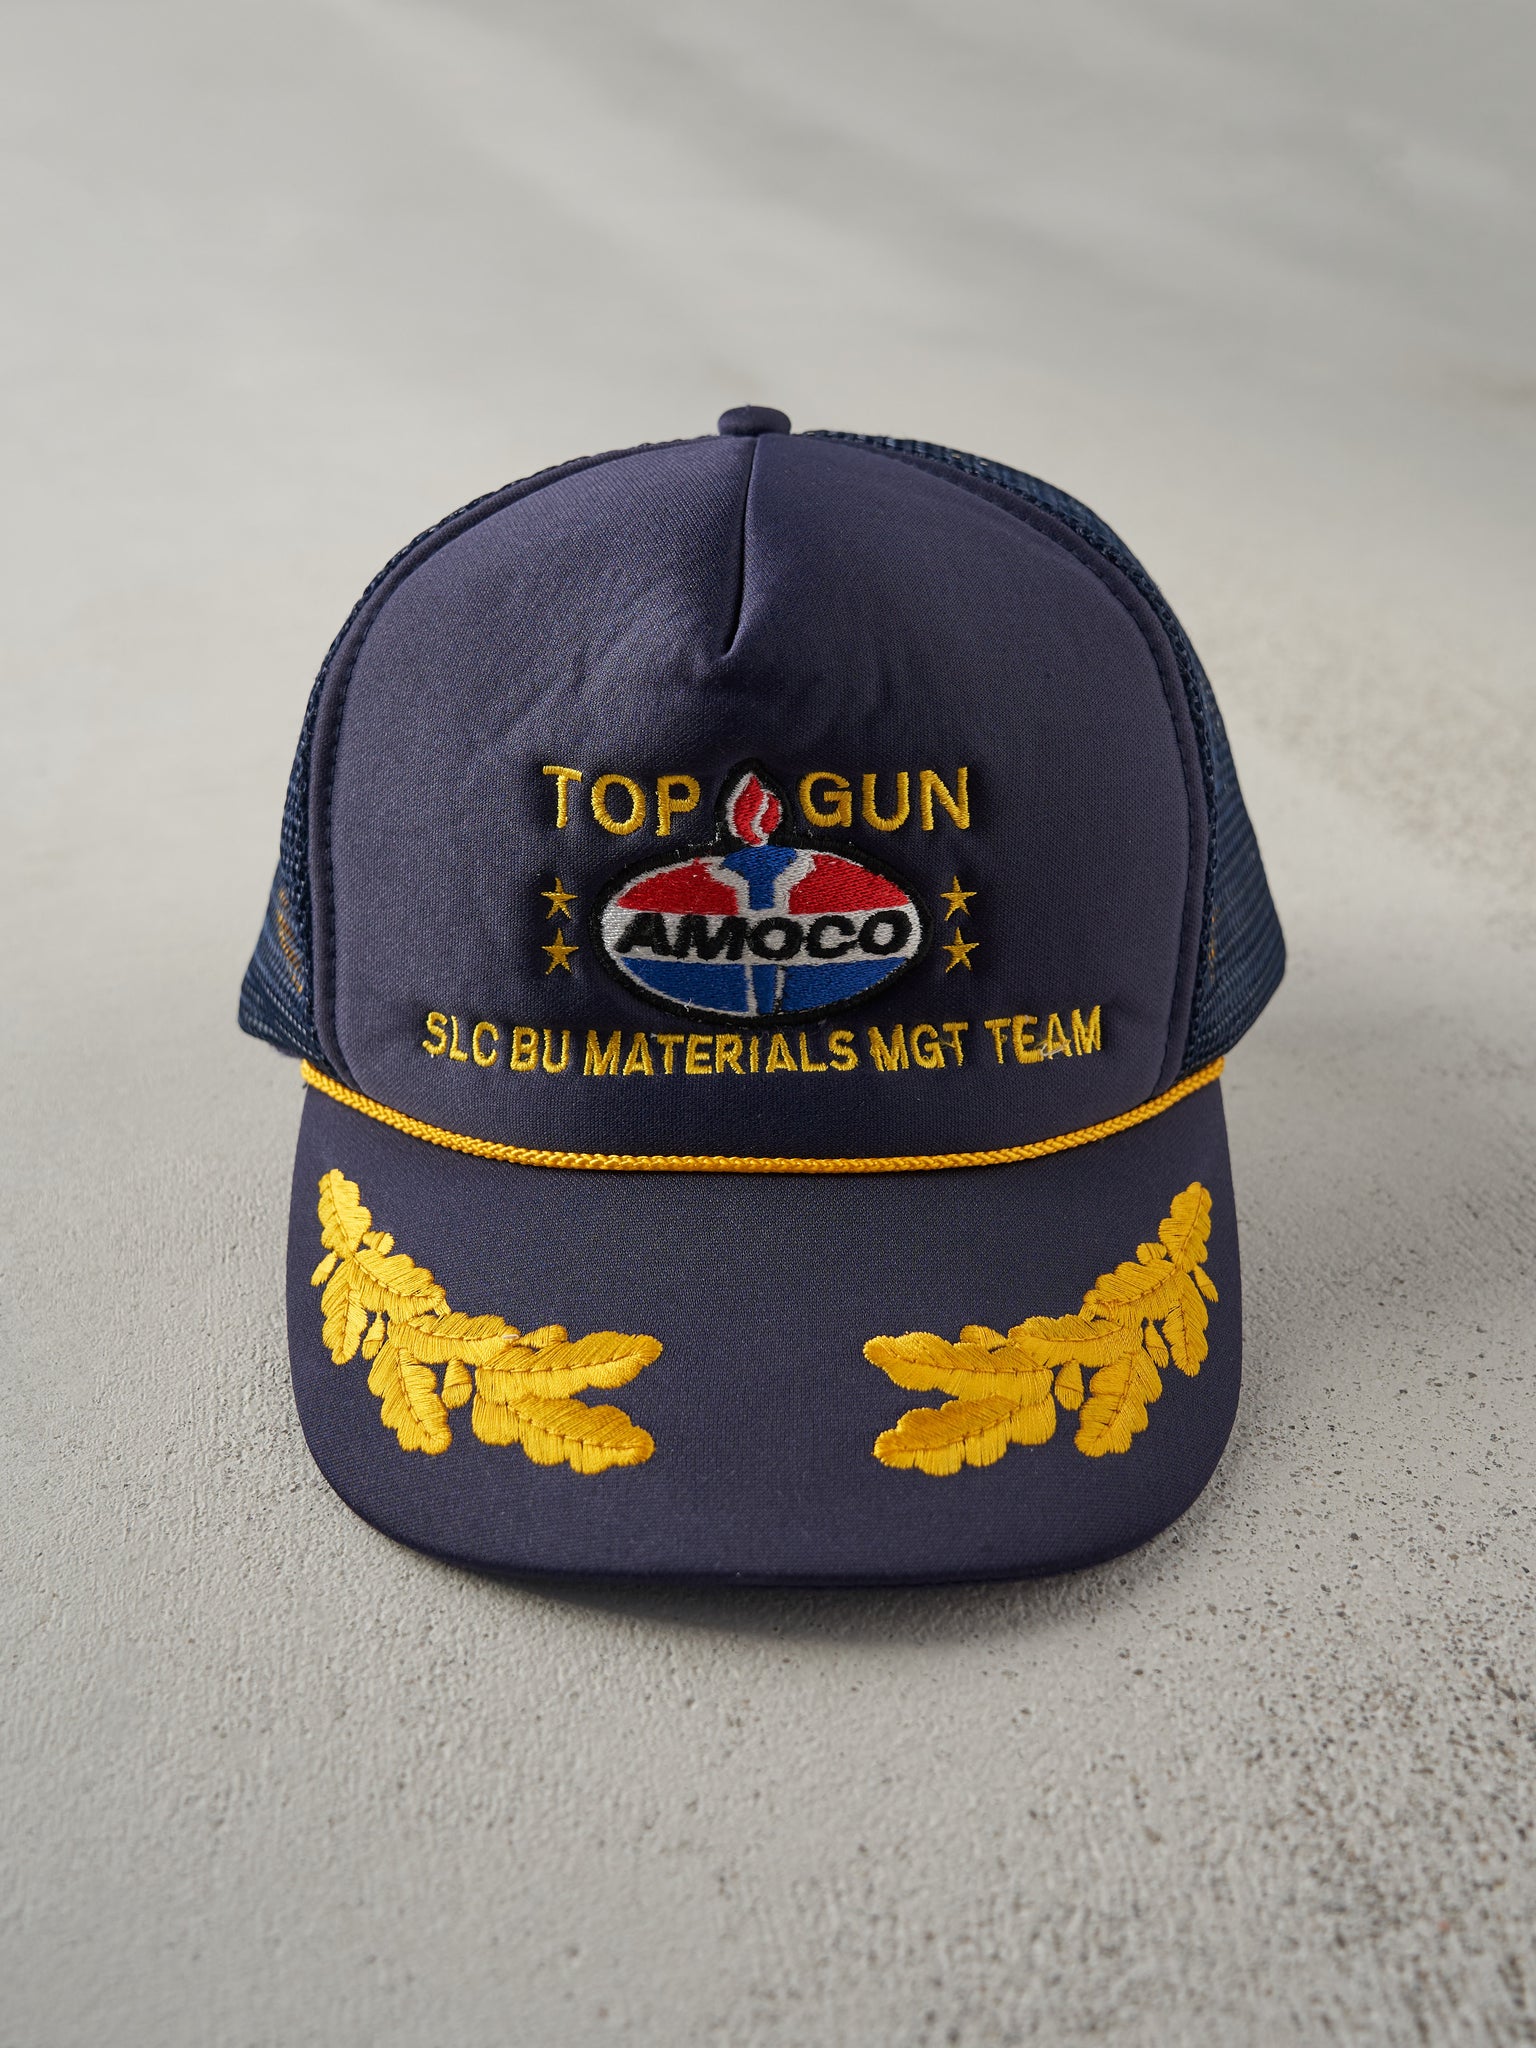 Vintage 90s Navy Blue Top Gun Amoco Oil Embroidered Foam Trucker Hat